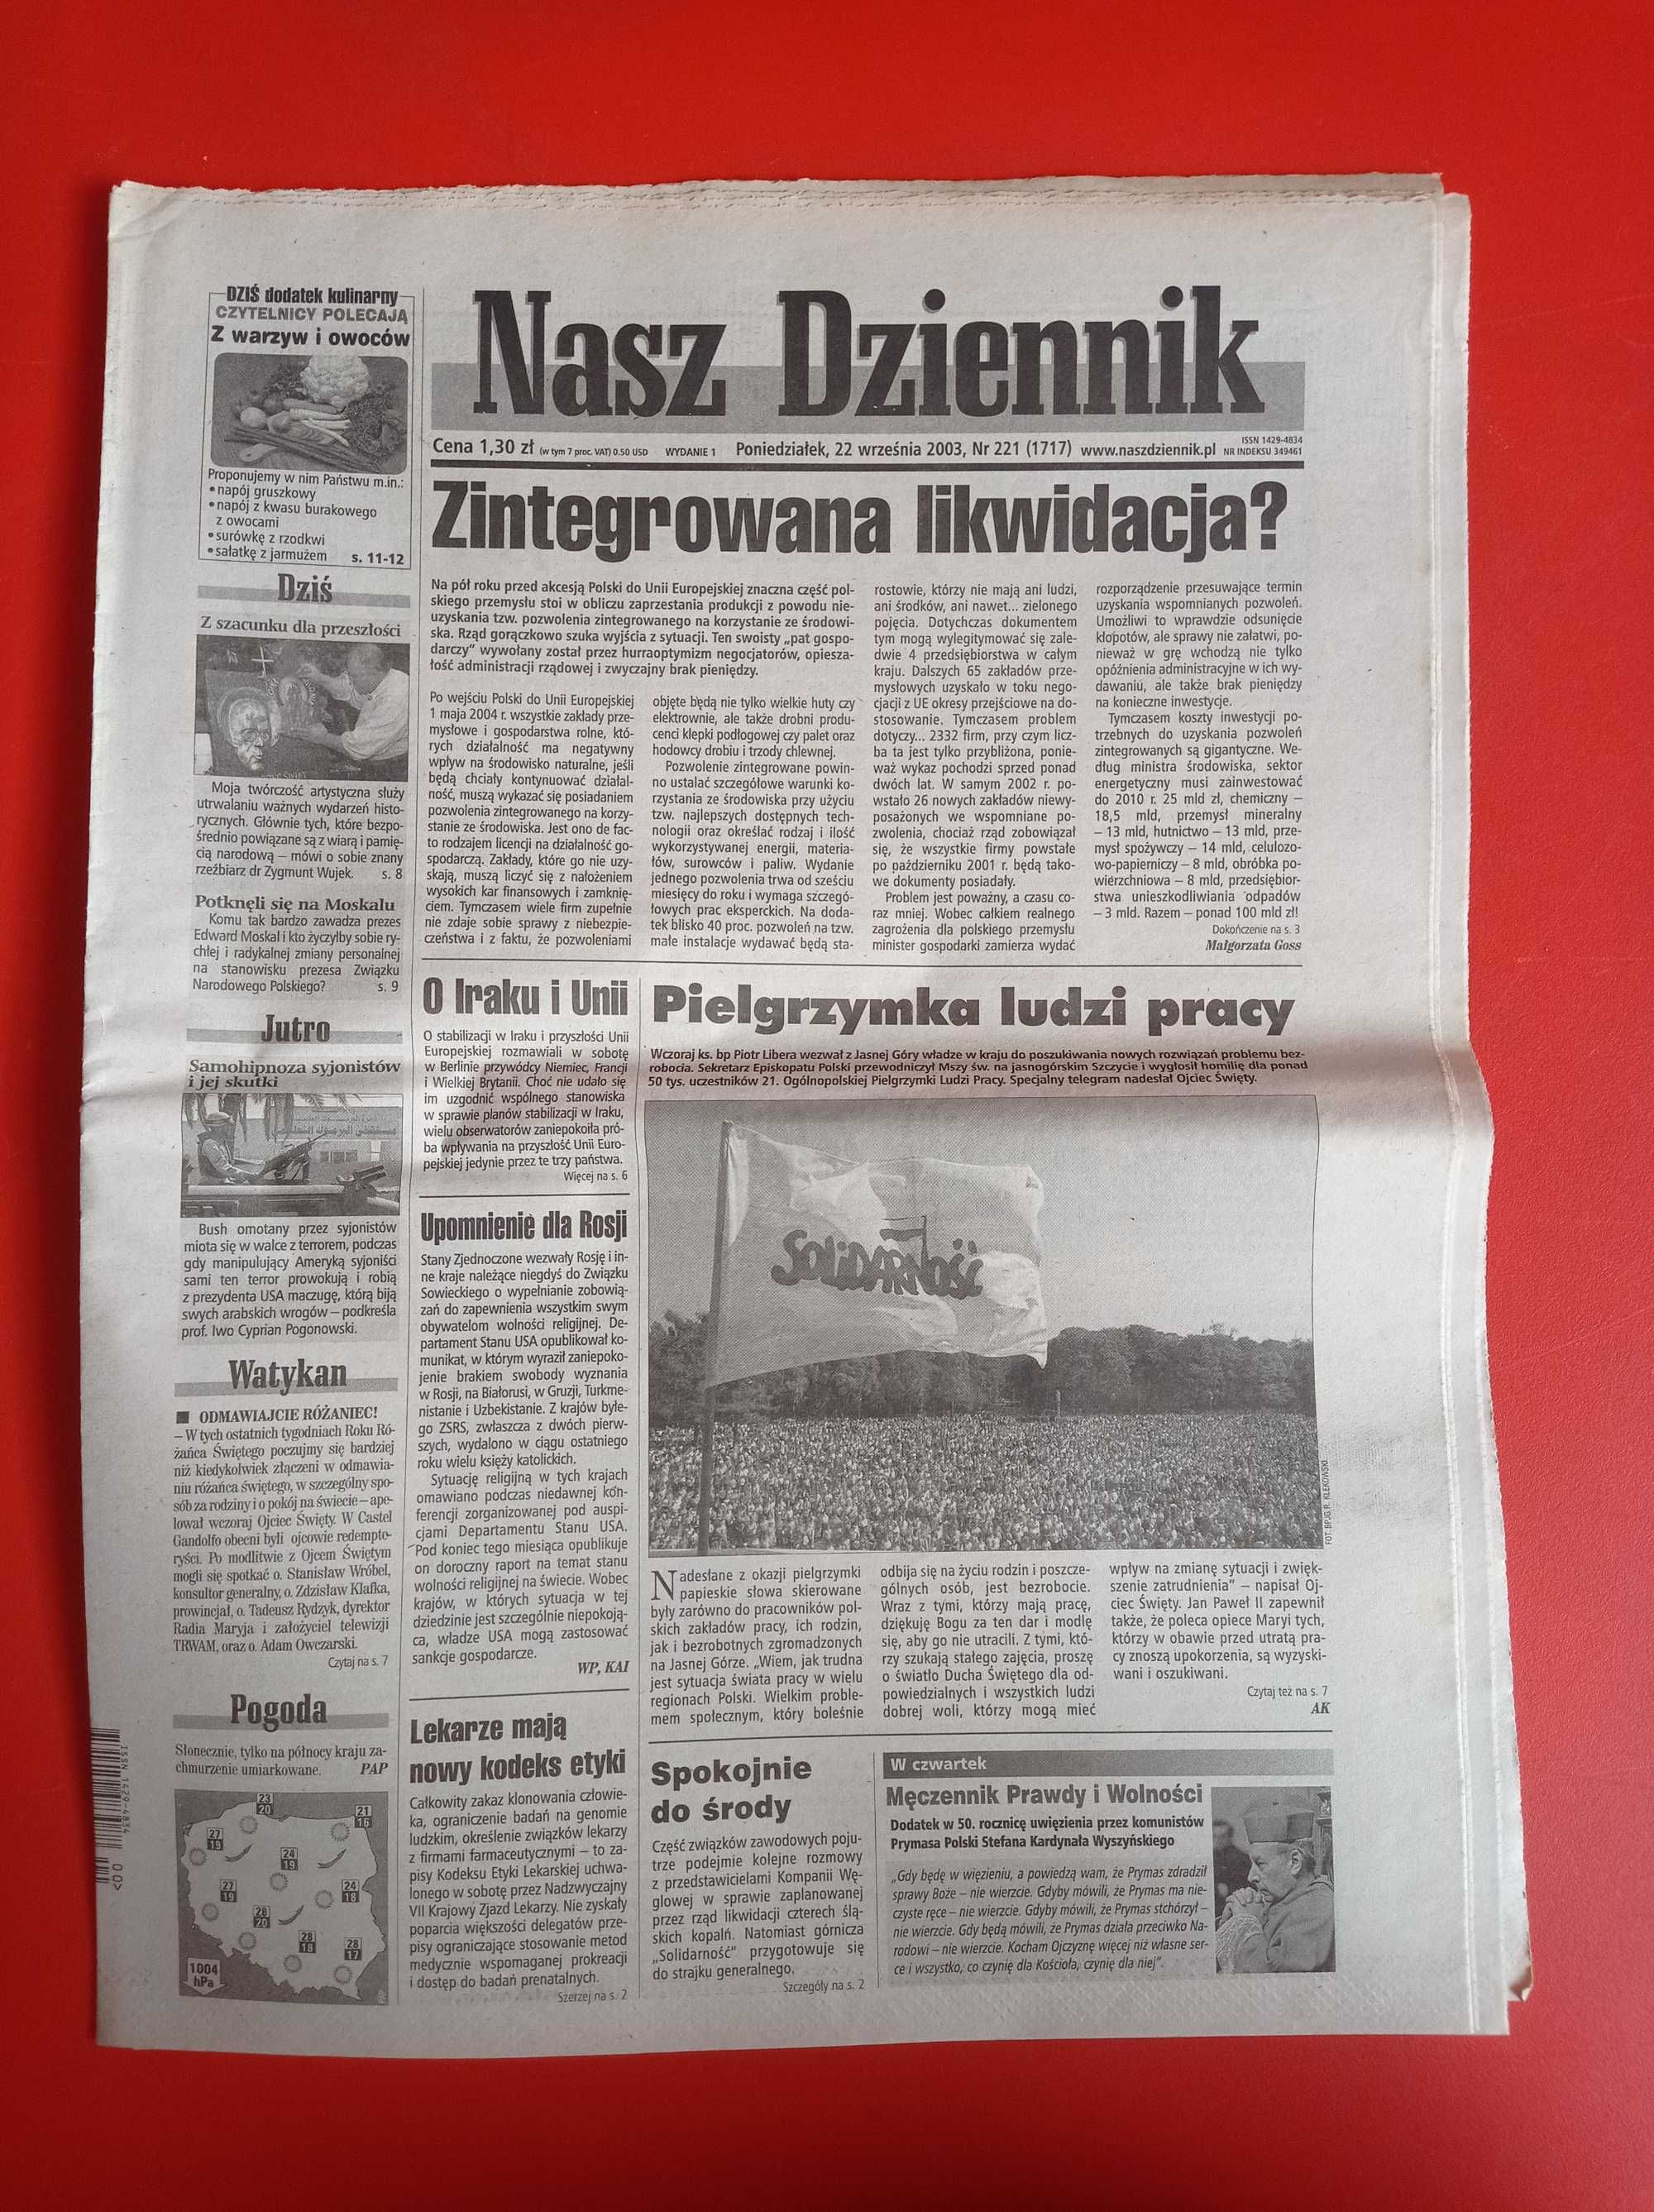 Nasz Dziennik, nr 221/2003, 22 września 2003